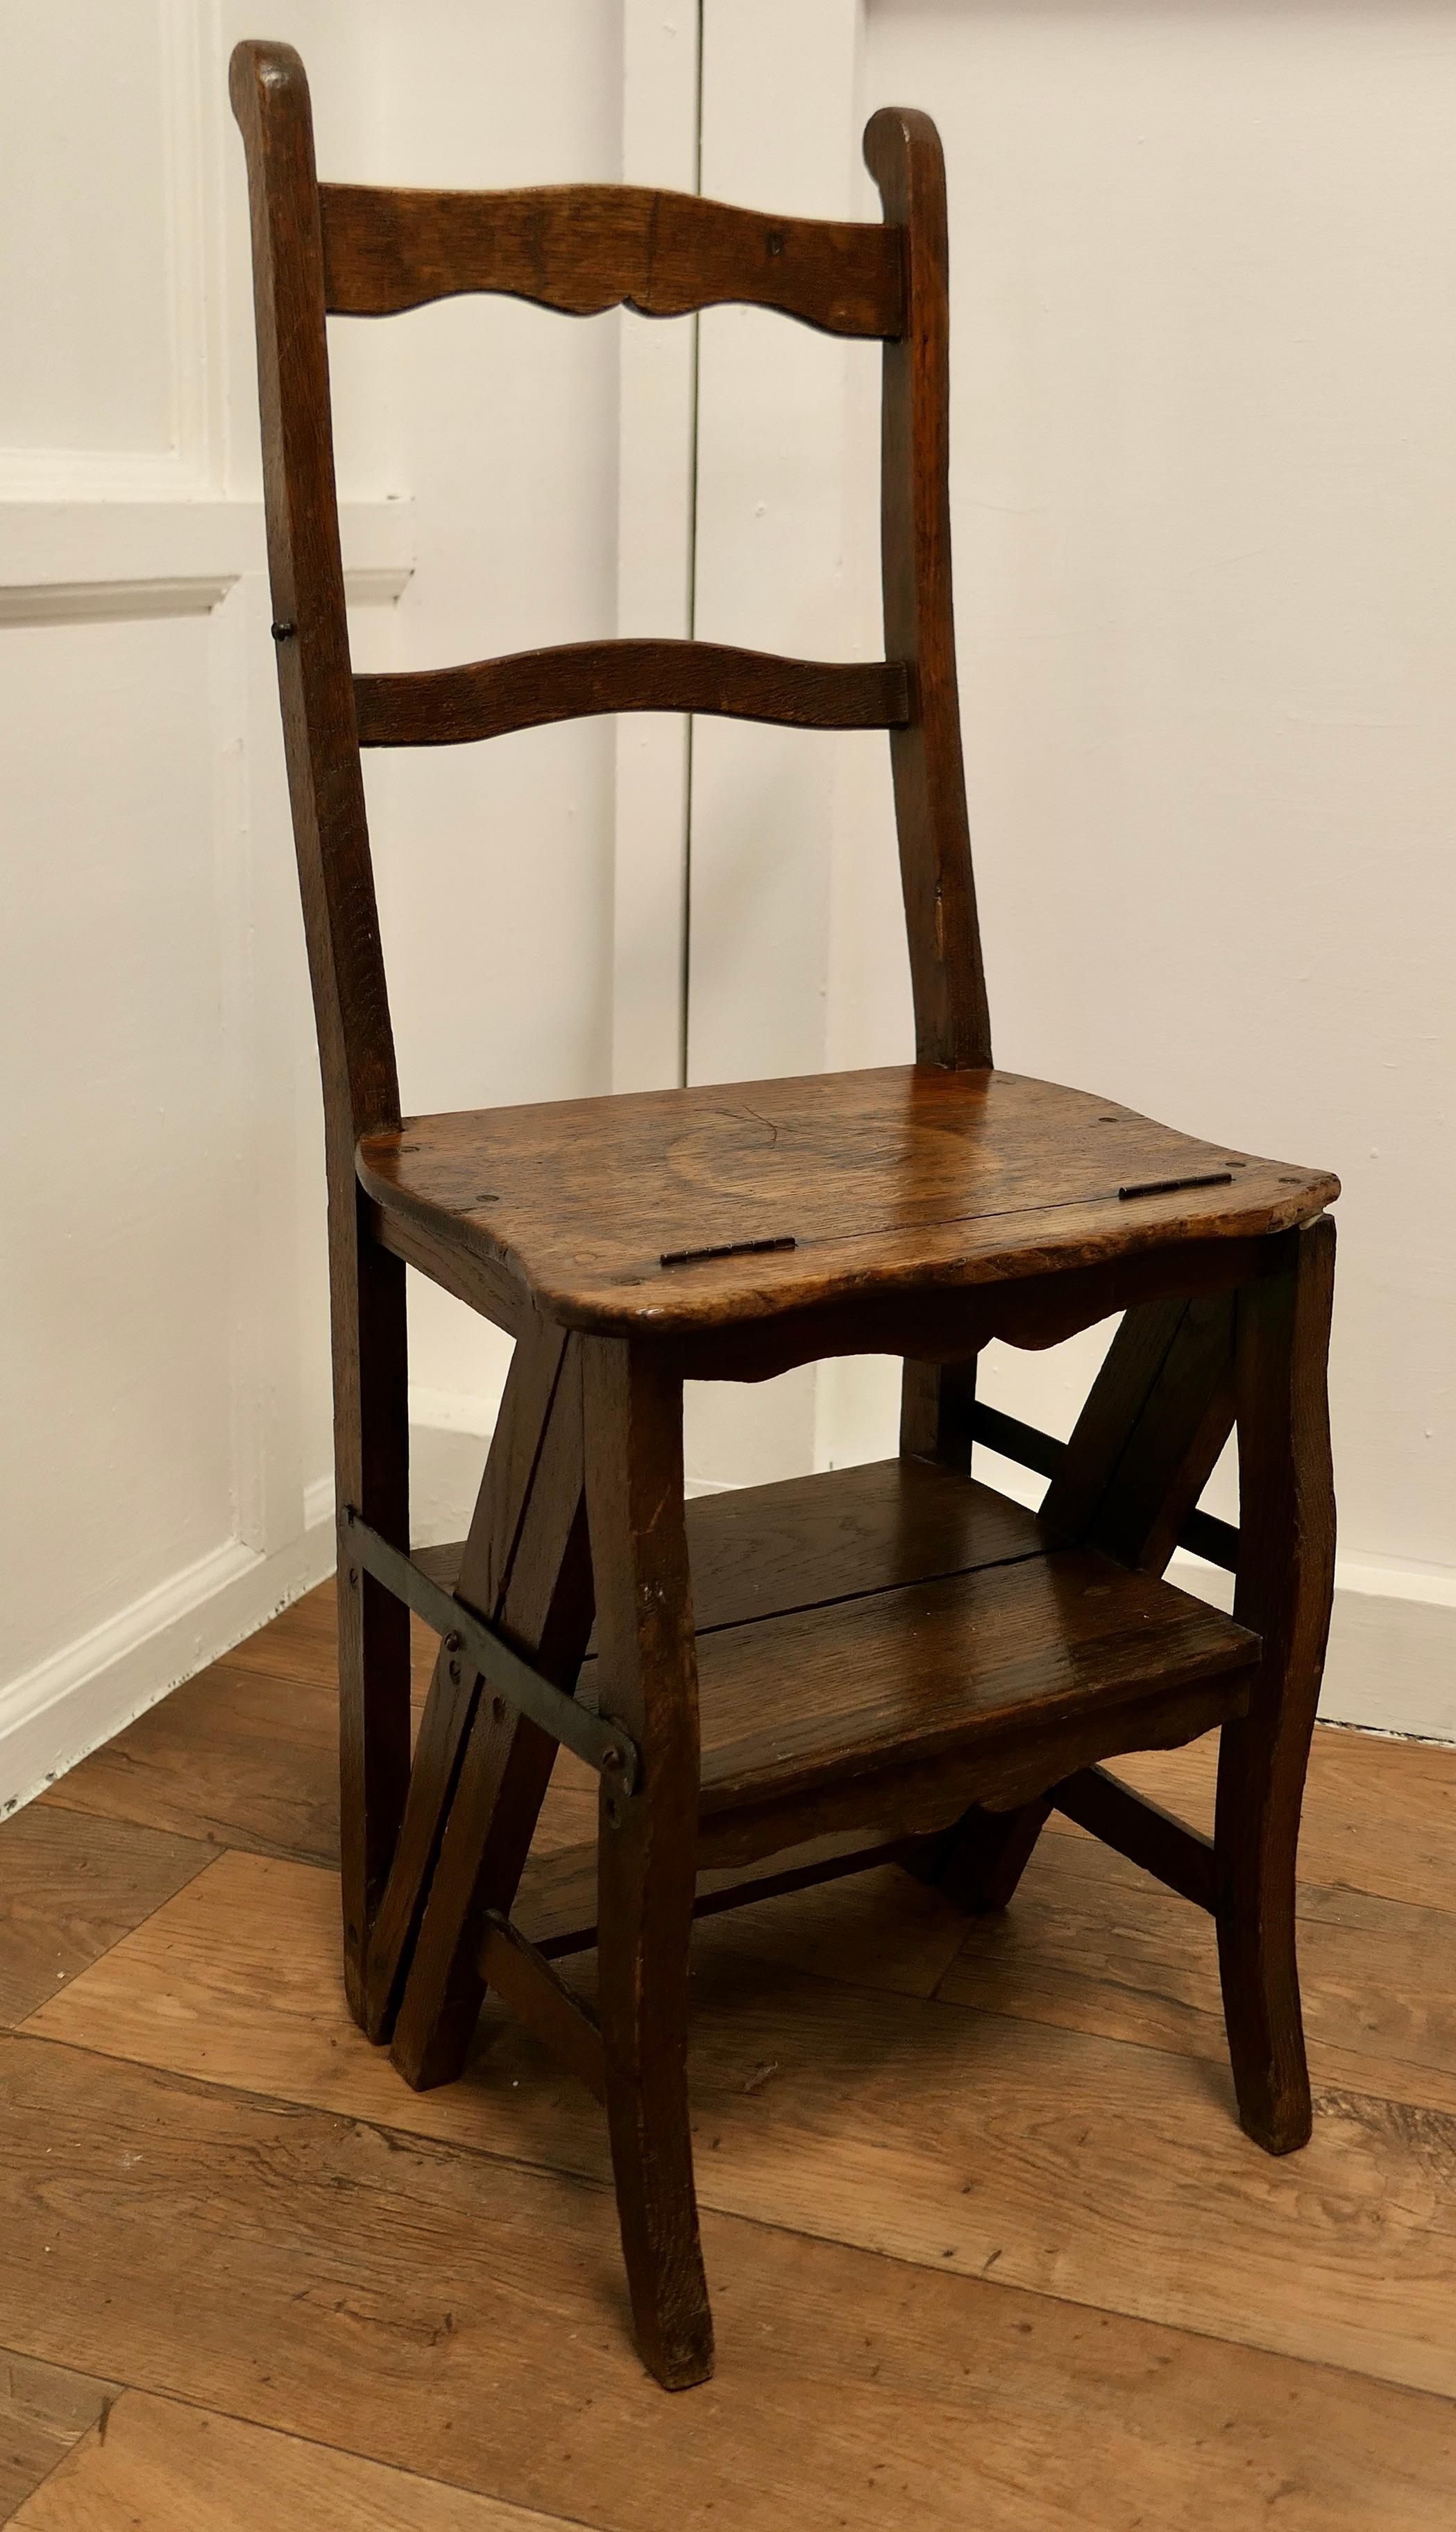 Chaise métamorphique à la française et échelles robustes

Une pièce très utile, cette petite chaise pratique peut être retournée et transformée en une petite échelle de 4 marches. A l'origine, ce type de chaise était utilisé dans un magasin ou une